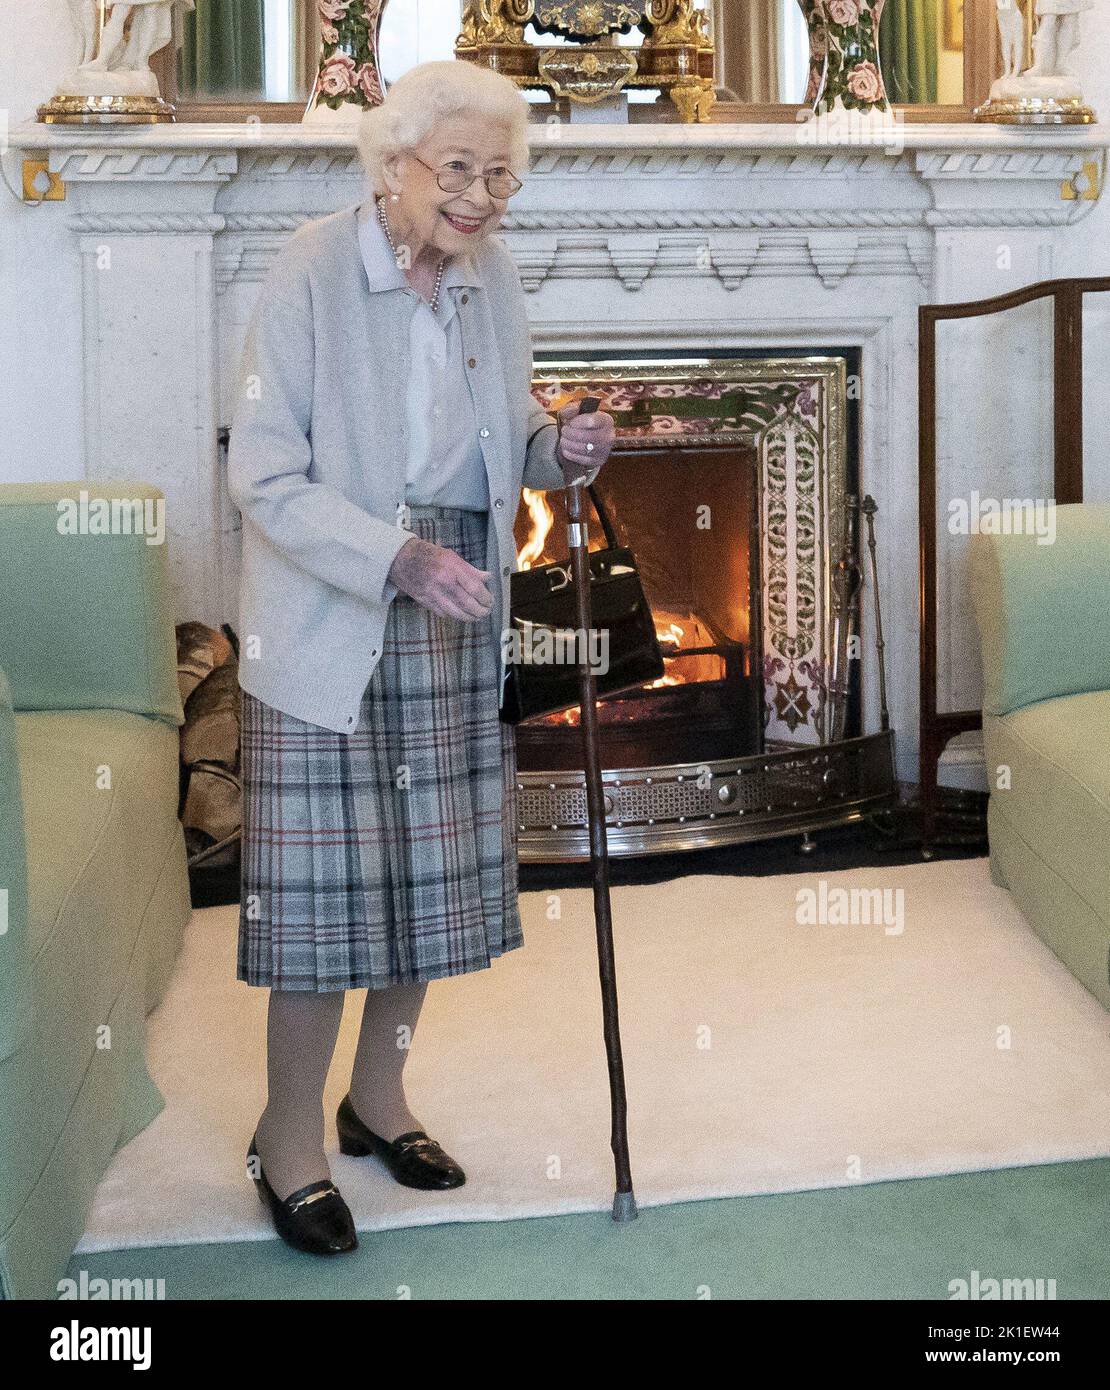 Foto de archivo de fecha 06/09/2022 de la Reina Isabel II esperando en la Sala de Dibujo antes de recibir a Liz Truss para una audiencia en Balmoral, Escocia, donde invitó al recién elegido líder del Partido Conservador a convertirse en Primer Ministro y formar un nuevo gobierno. Fecha de emisión: Domingo 18 de Septiembre de 2022. Foto de stock